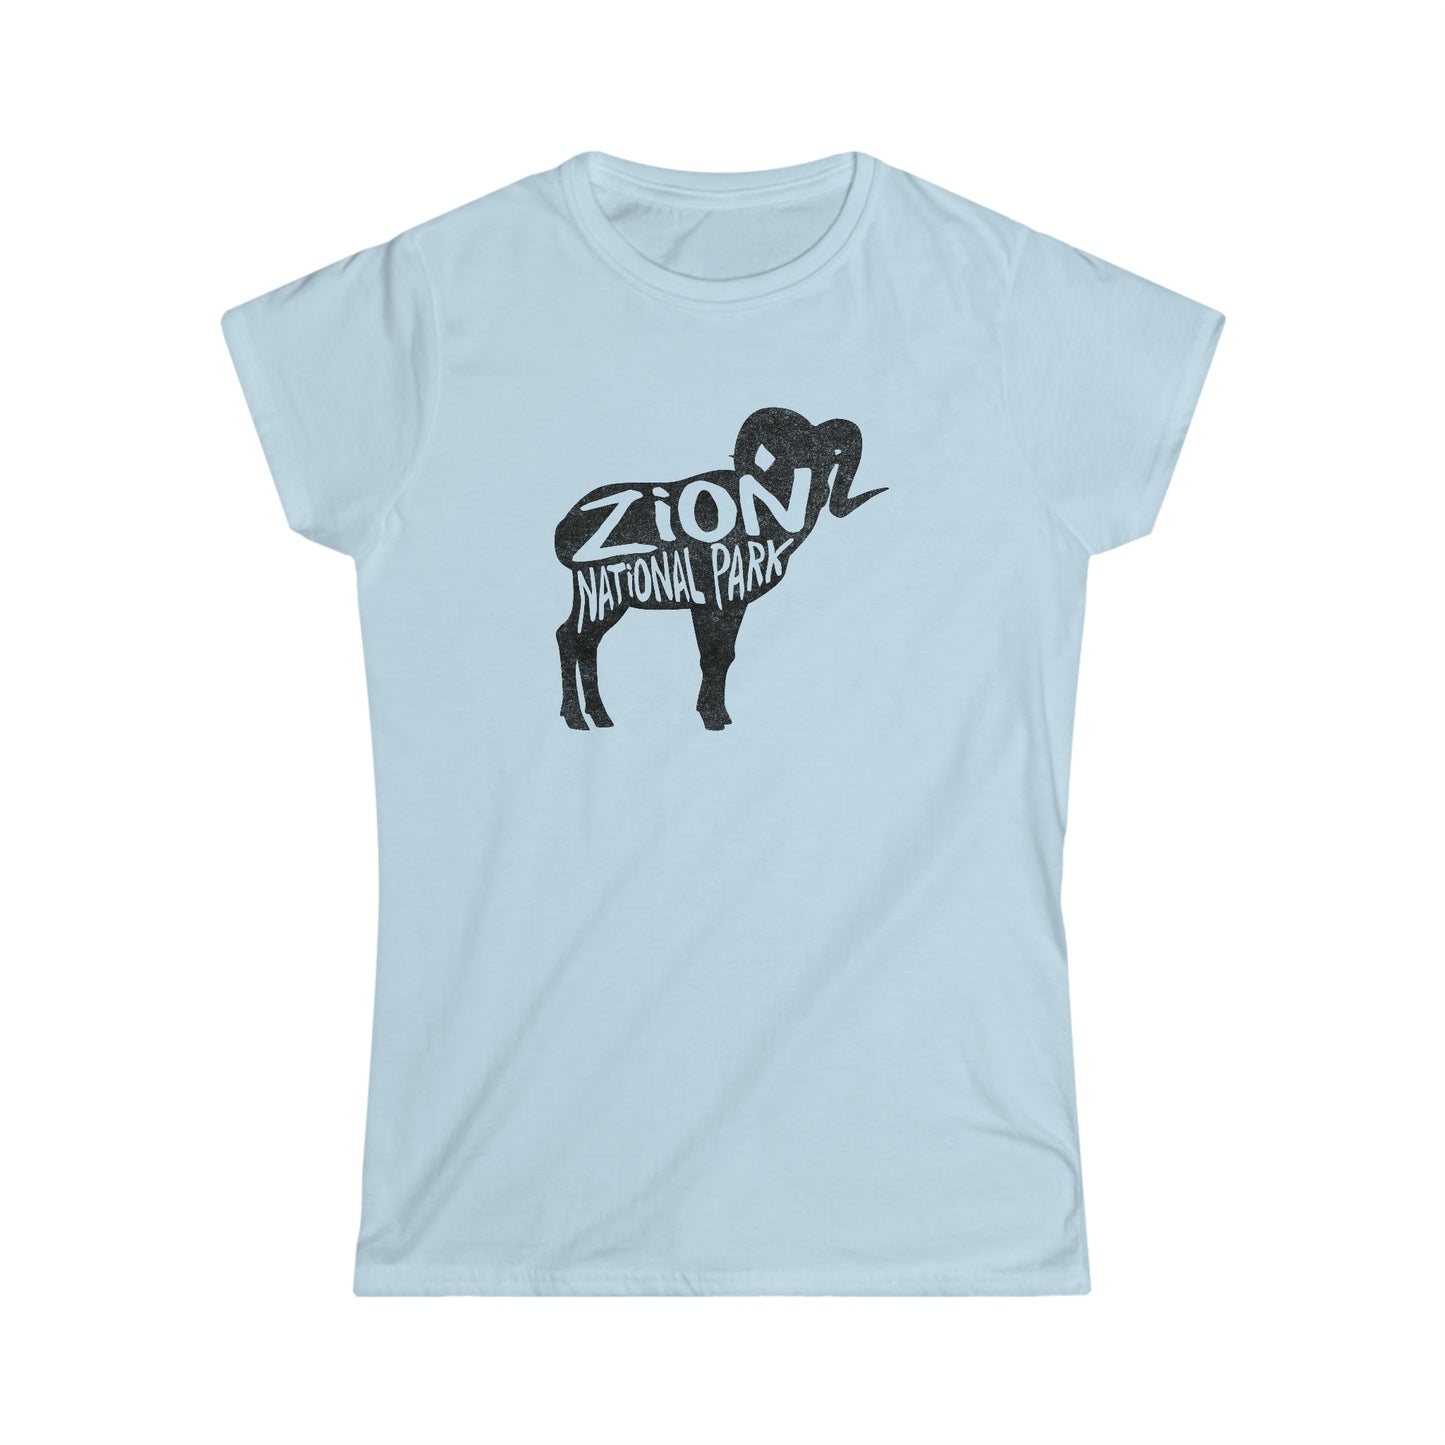 Zion National Park Women's T-Shirt - Bighorn Sheep